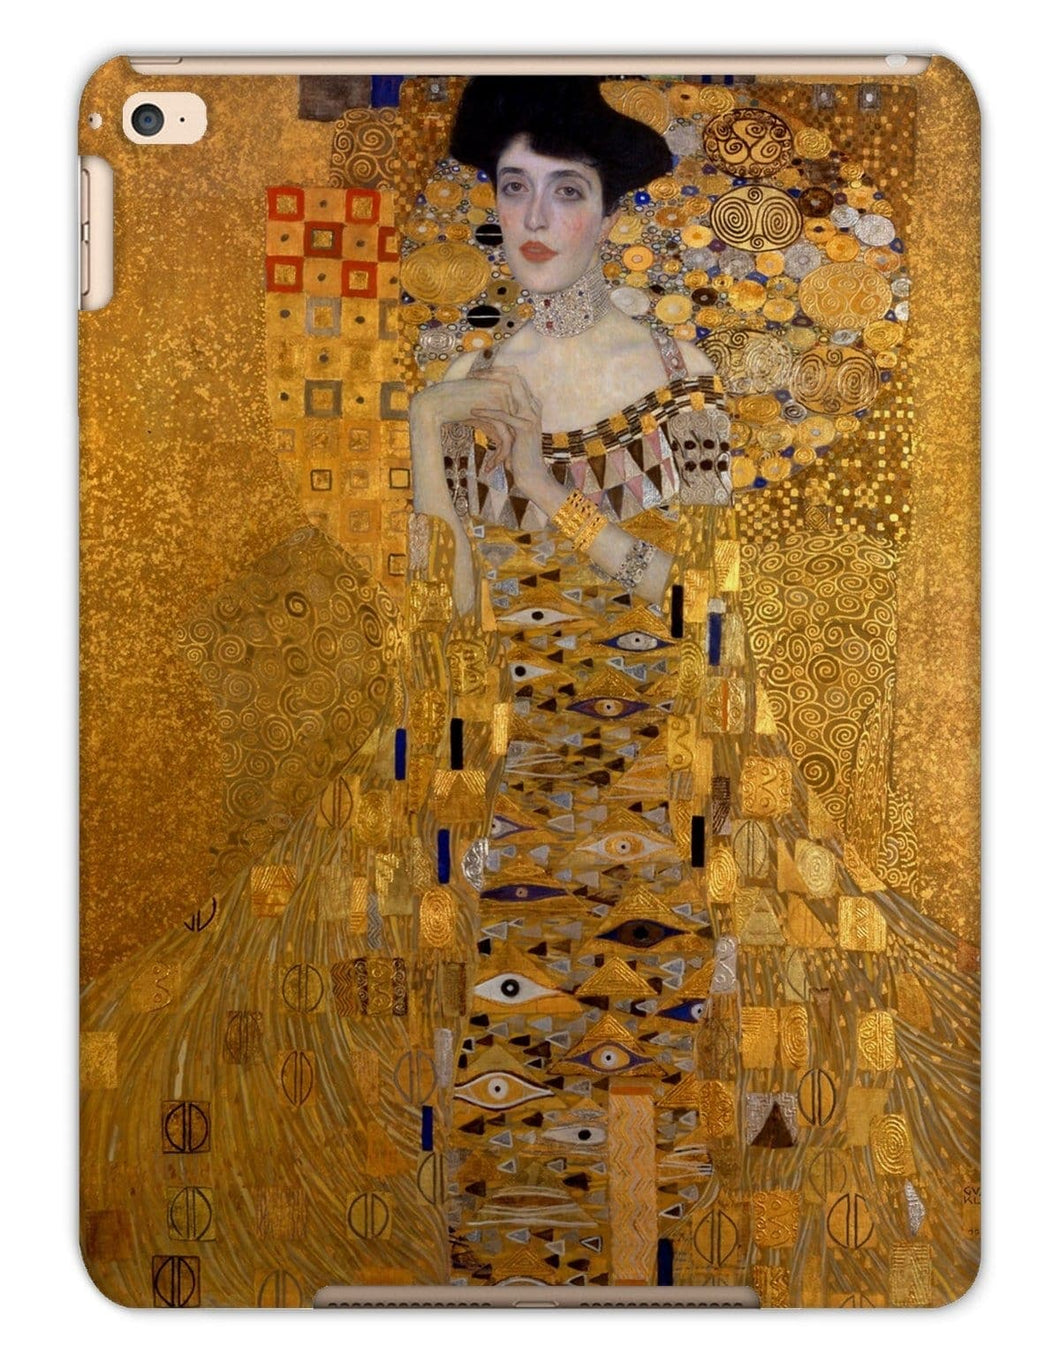 Portrait of Adele Bloch-Bauer by Gustav Klimt. iPad Air 2 / Matte - Exact Art